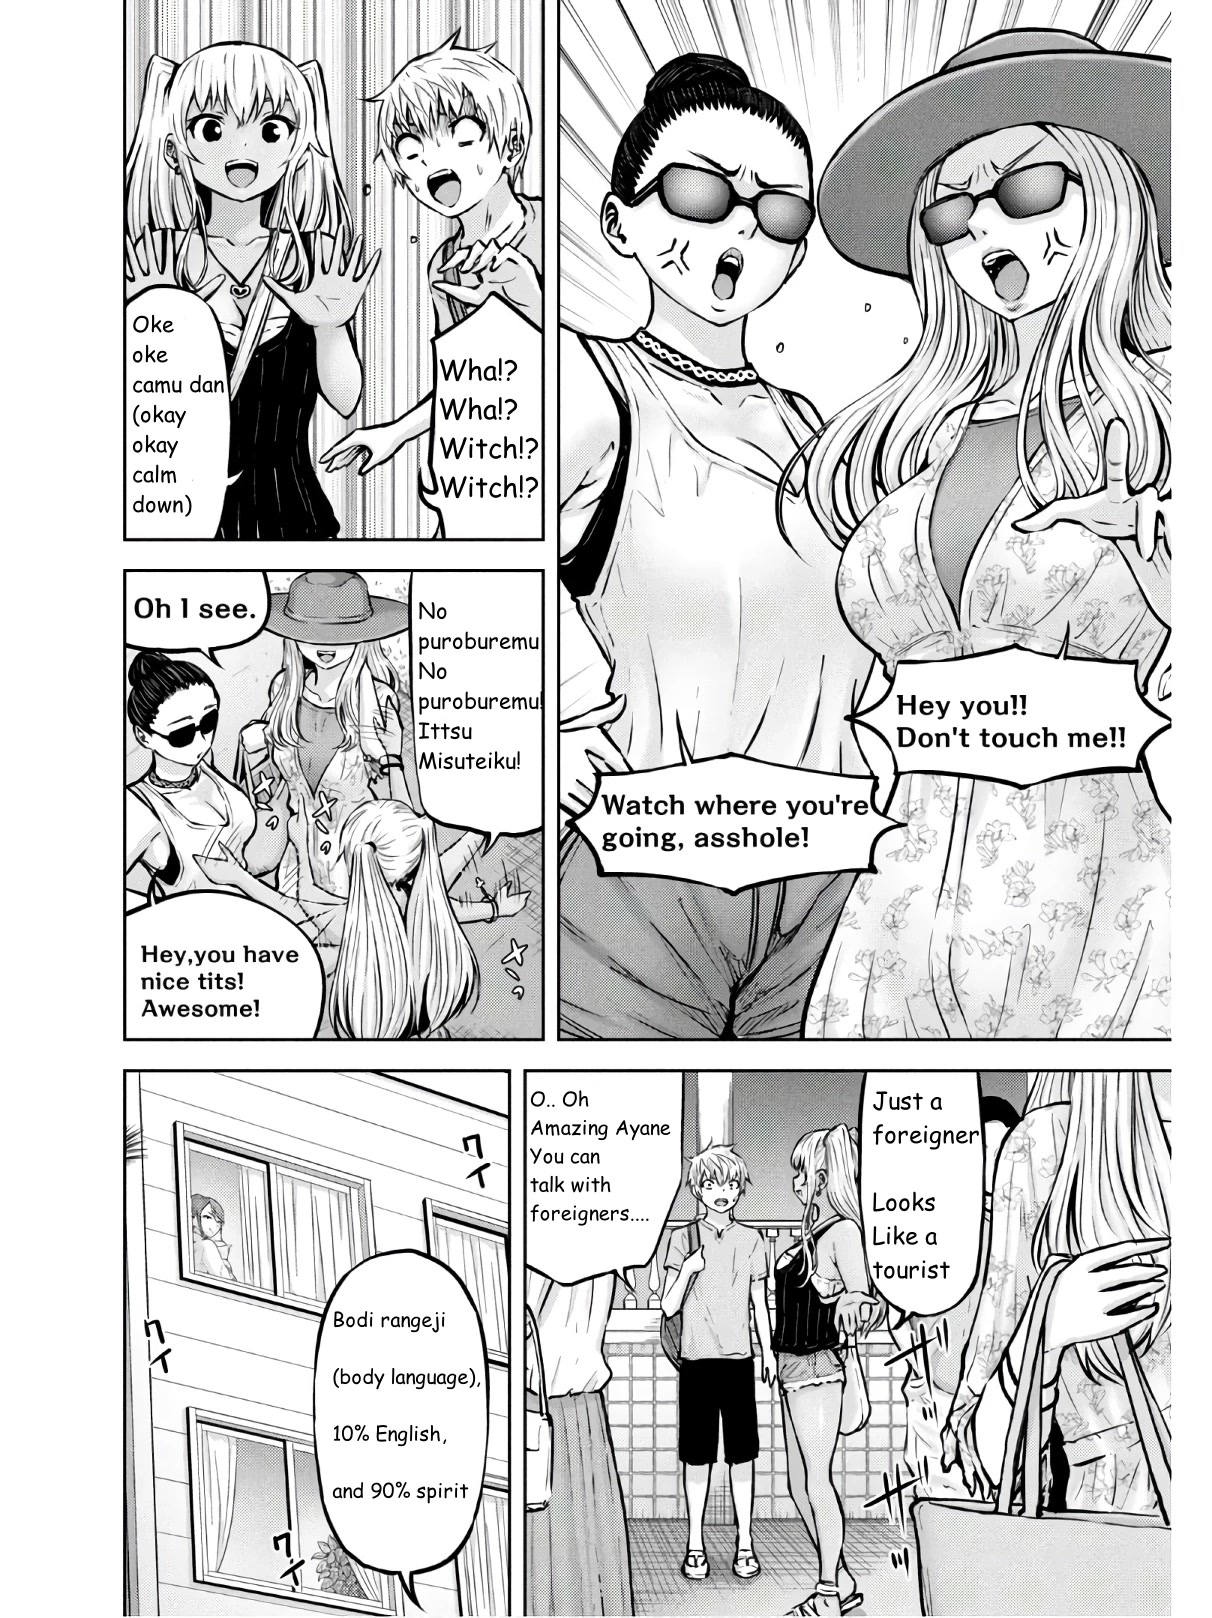 Adamasu No Majotachi - Page 2